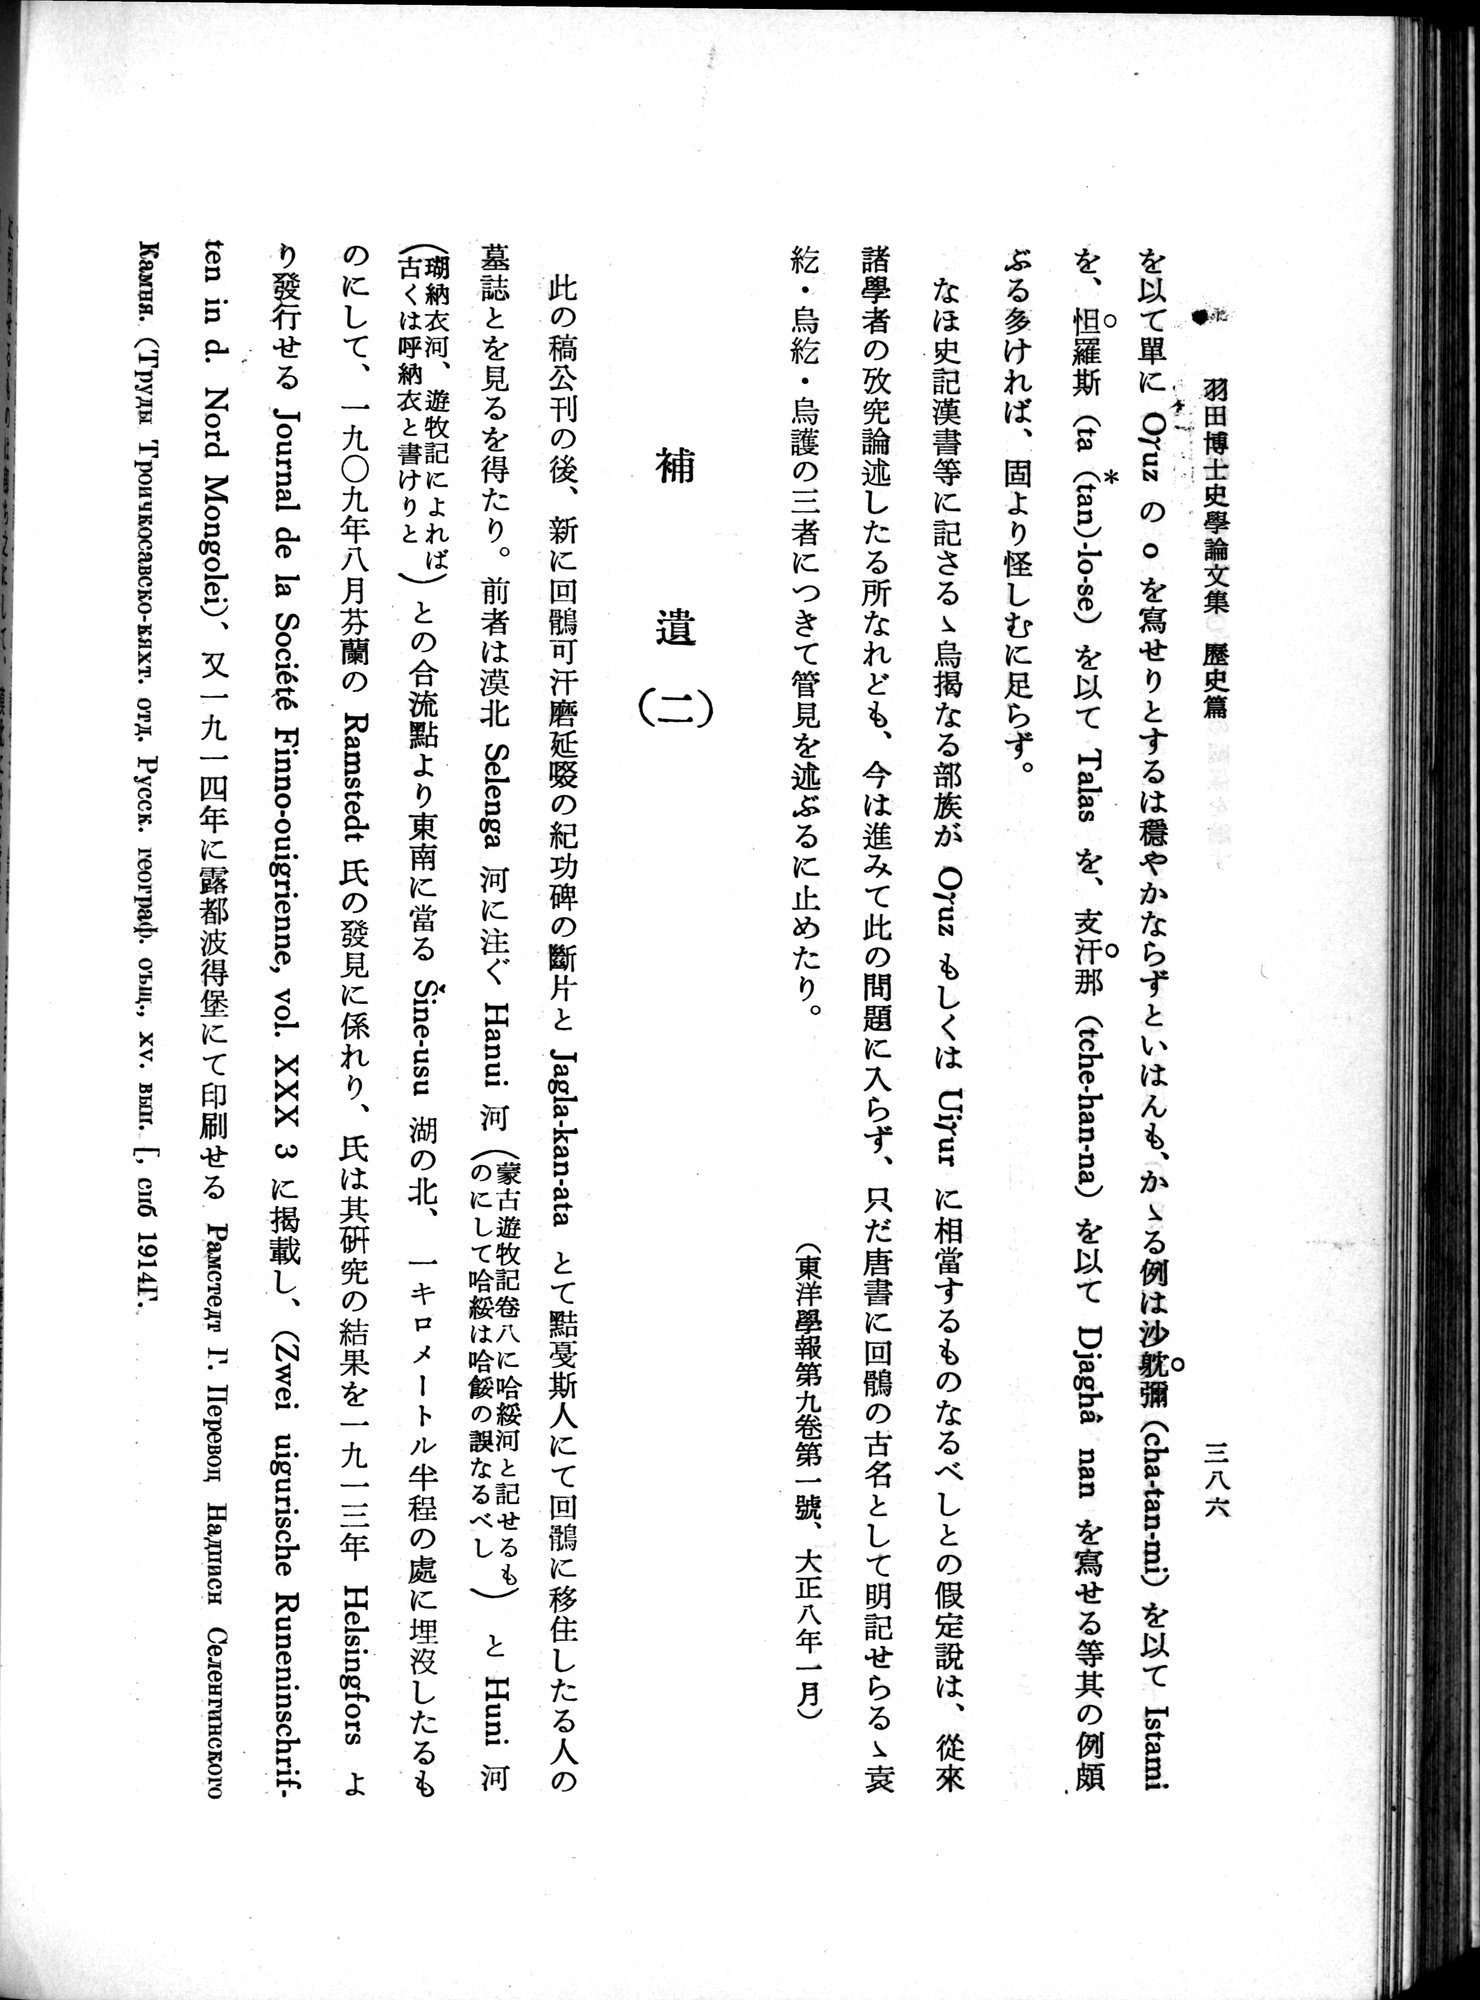 羽田博士史学論文集 : vol.1 / Page 424 (Grayscale High Resolution Image)